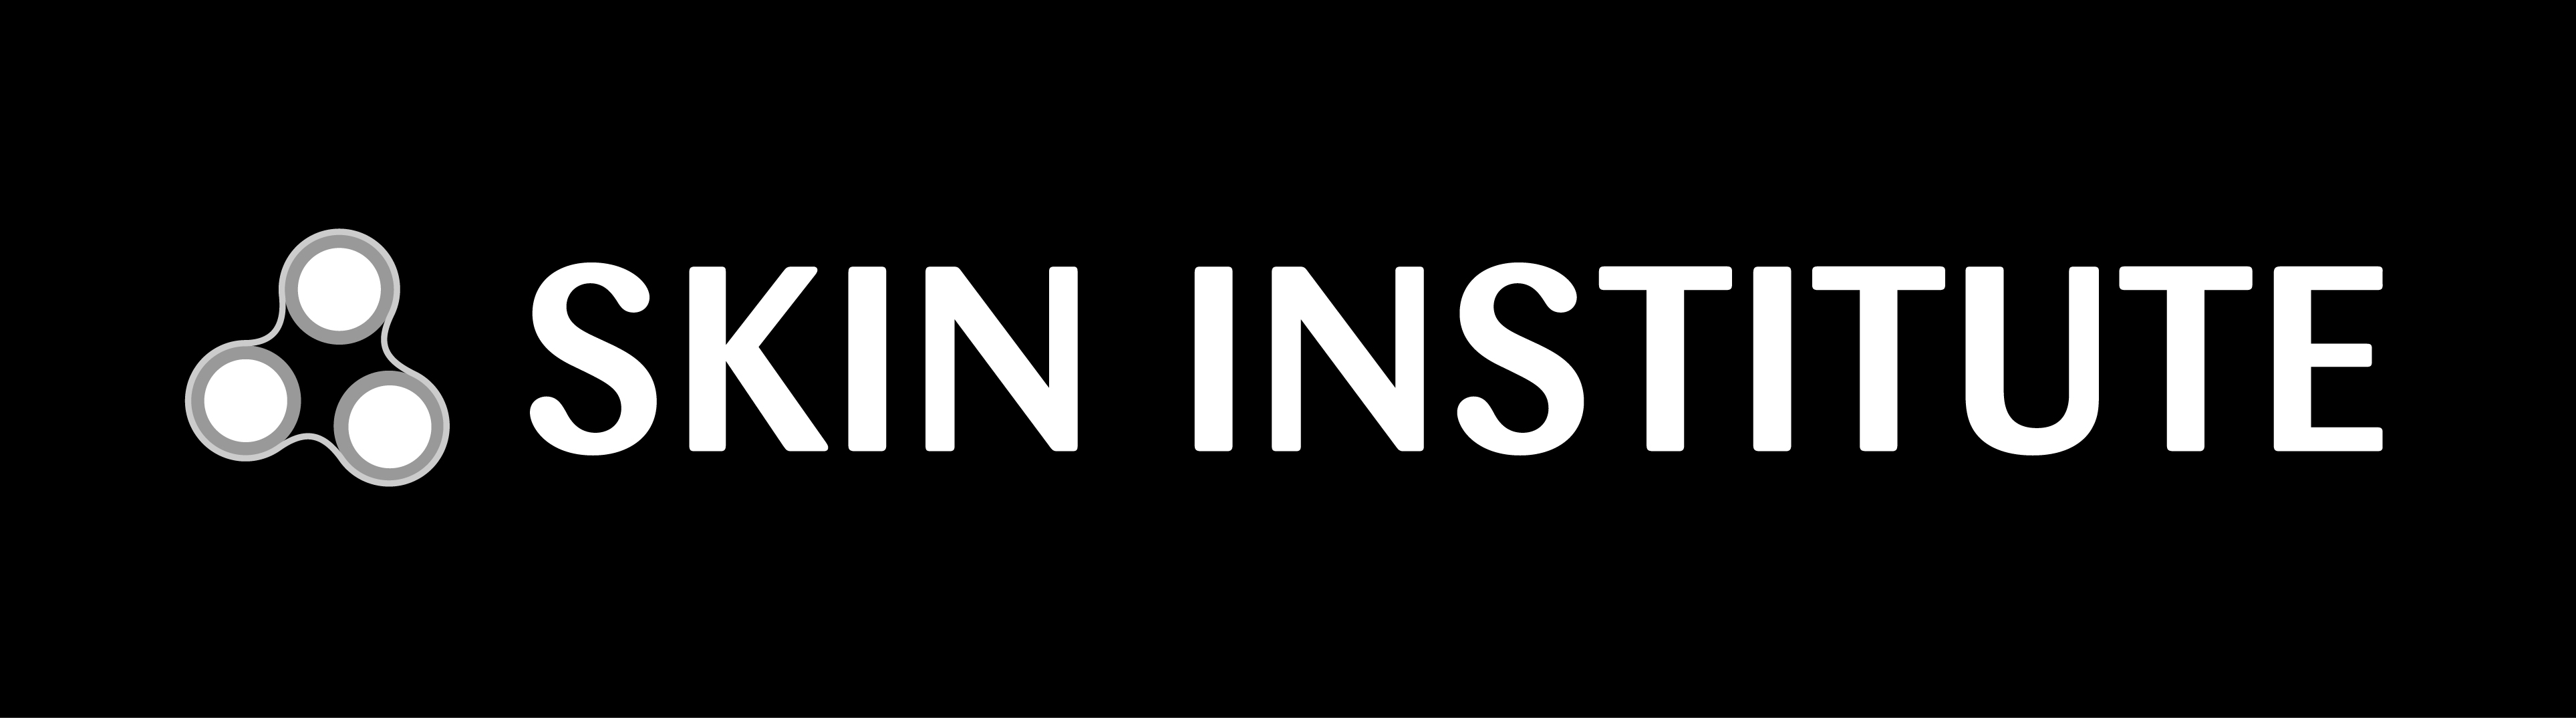 Skin Institute Careers Logo